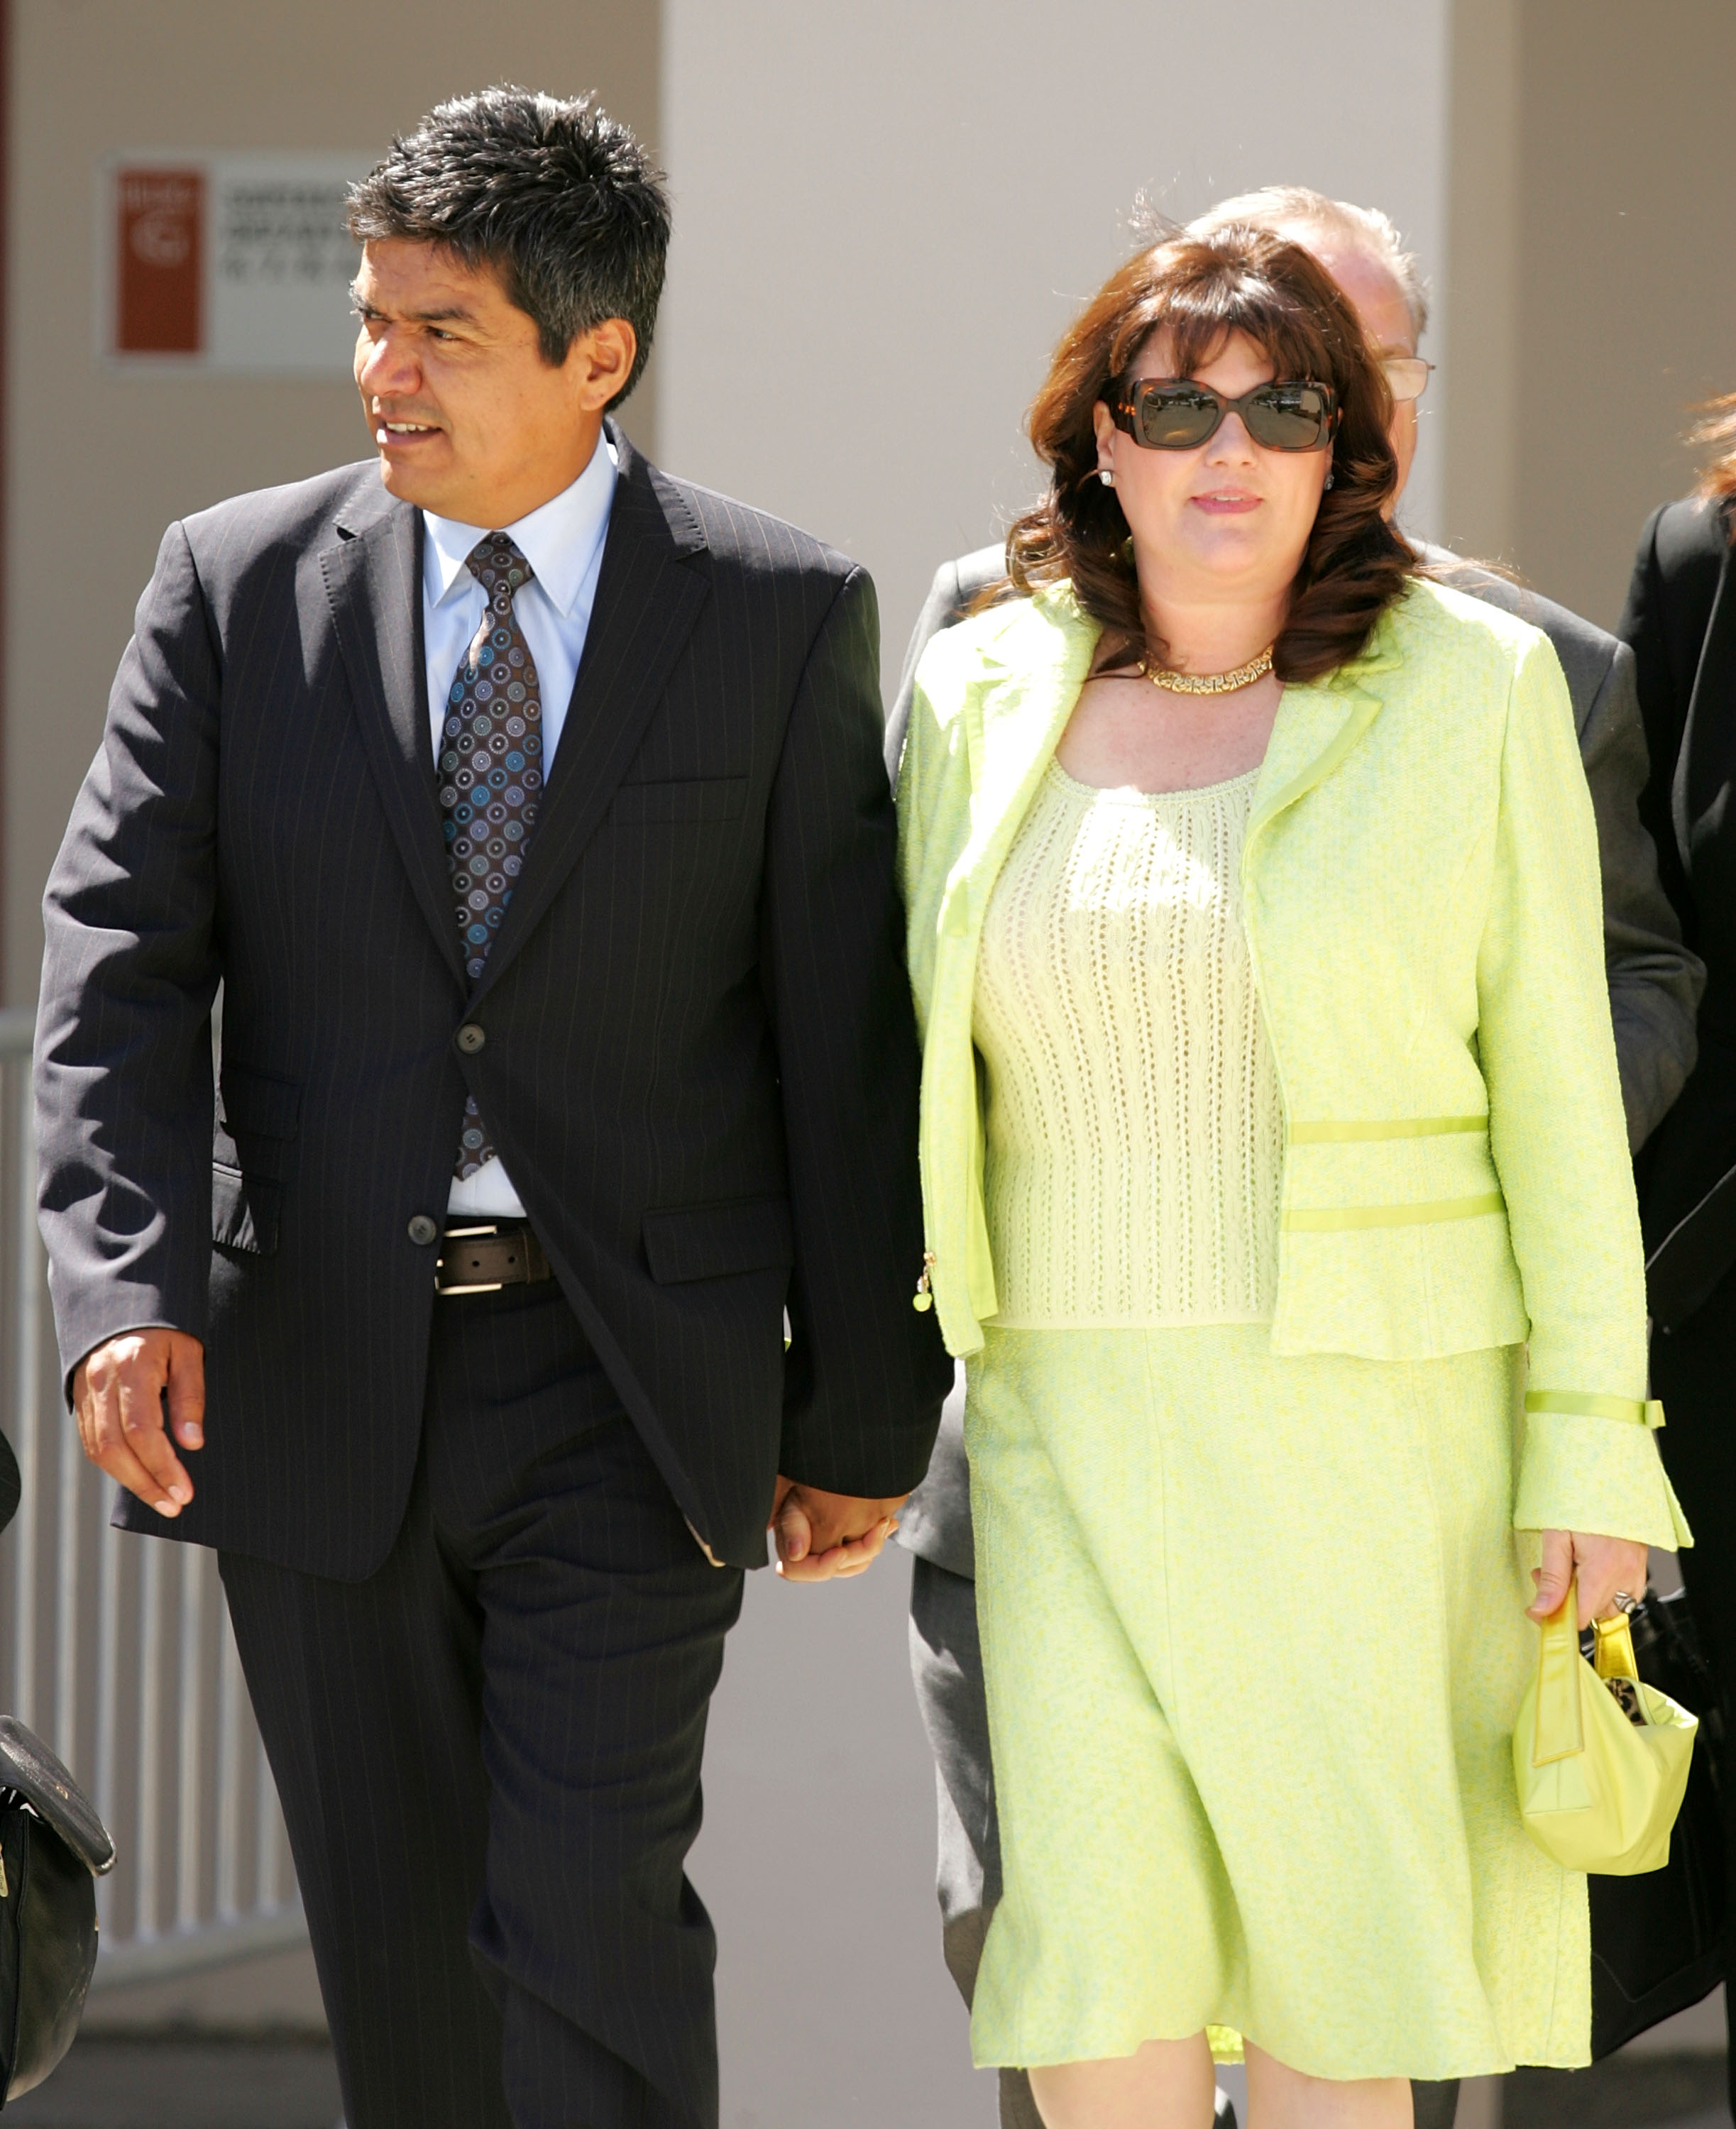 George Lopez et Anna Serrano quittent le tribunal supérieur de Santa Maria le 28 mars 2005 à Santa Maria, Californie. | Source : Getty Images